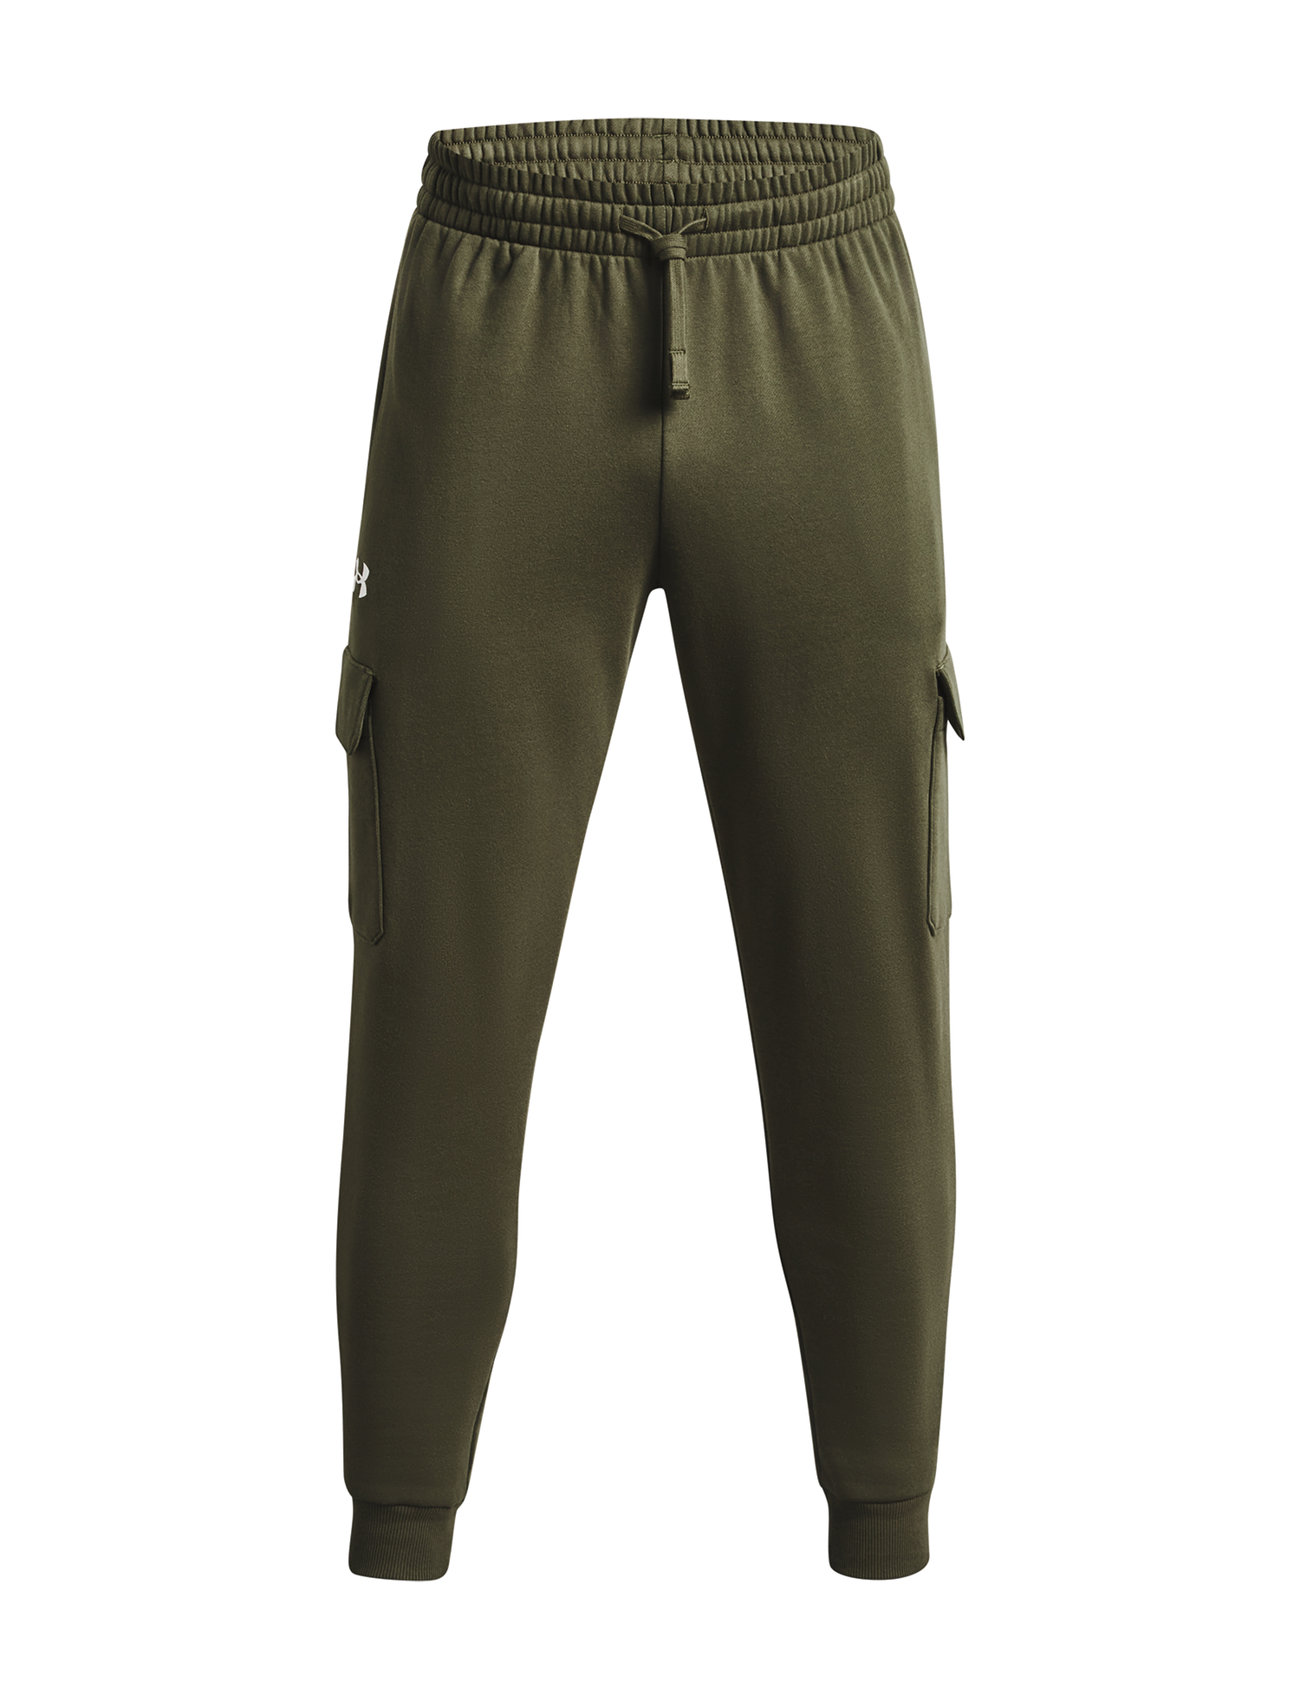 Ua Rival Fleece Cargo Jogger Sport Trousers Cargo Pants Khaki Green Under Armour